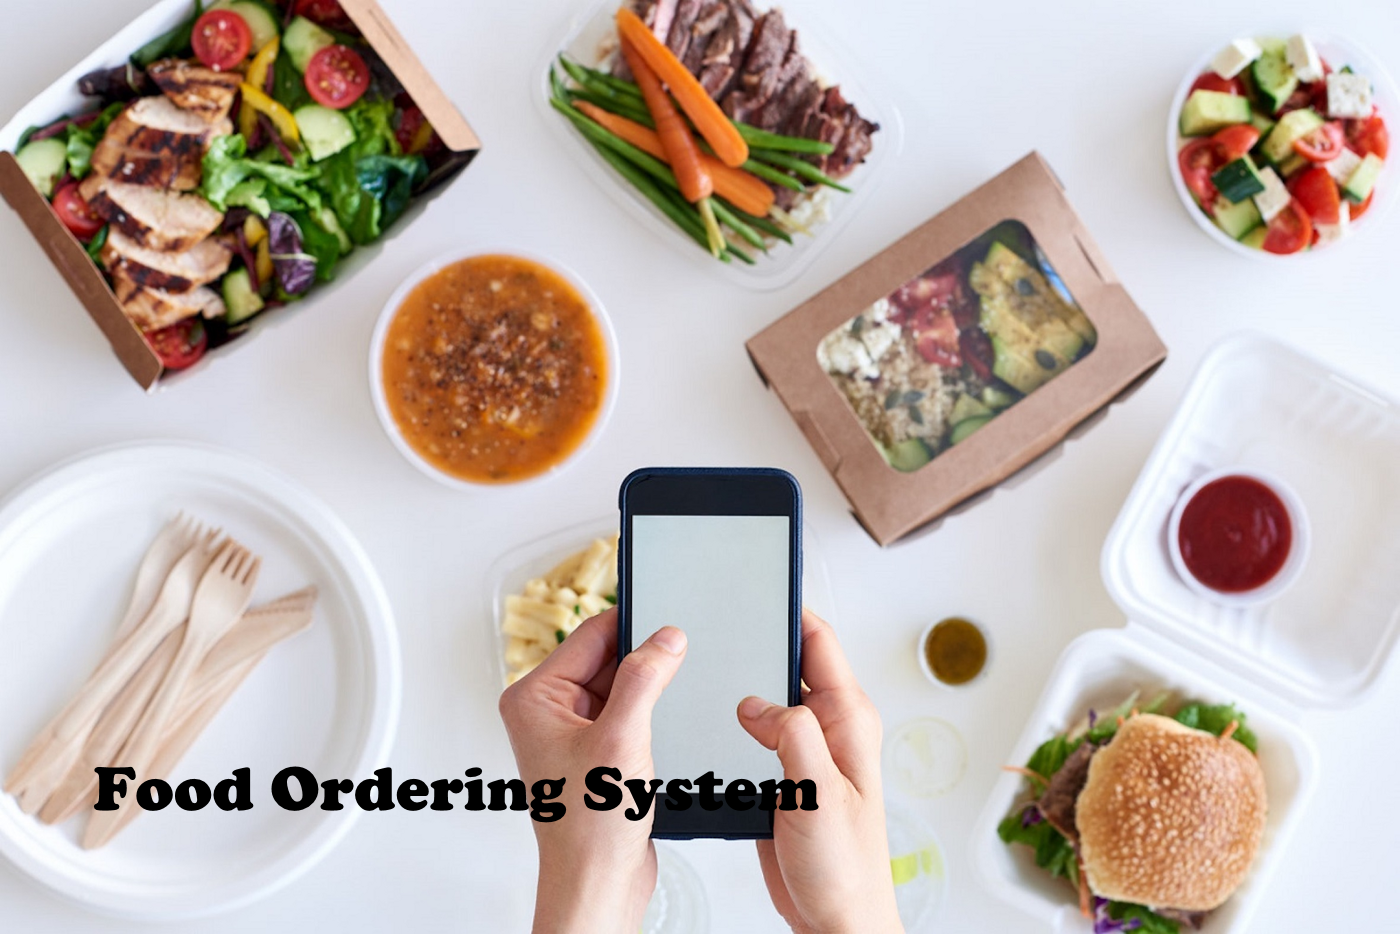 Why choose SaaS based food ordering system?